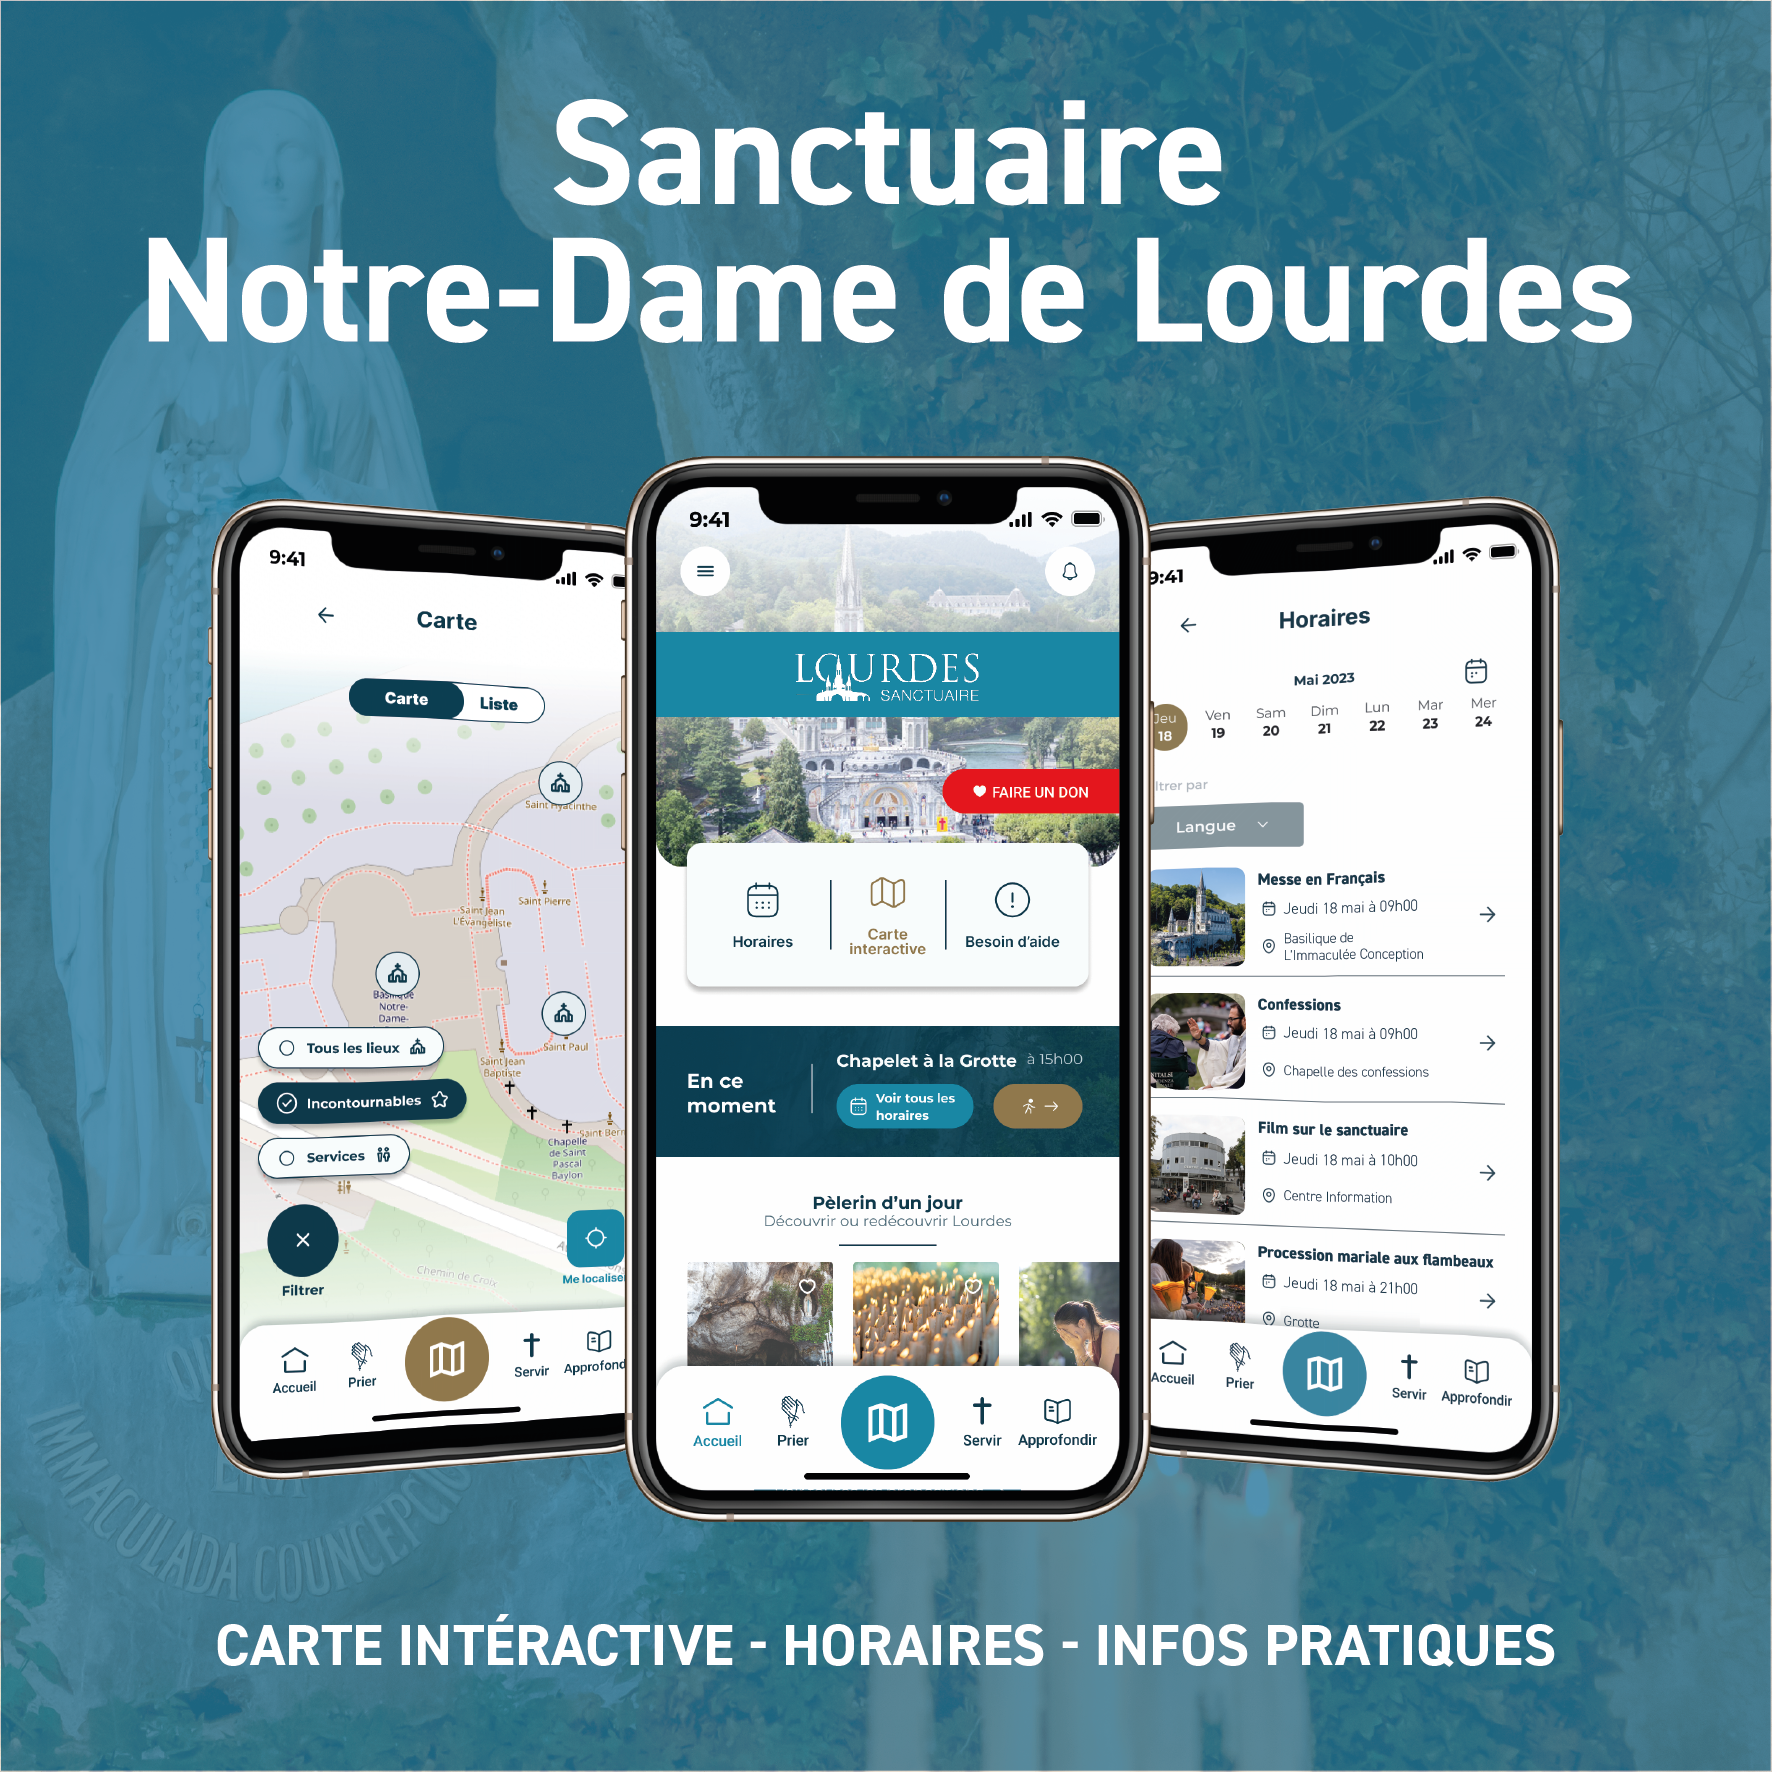 L’application Sanctuaire Notre-Dame de Lourdes